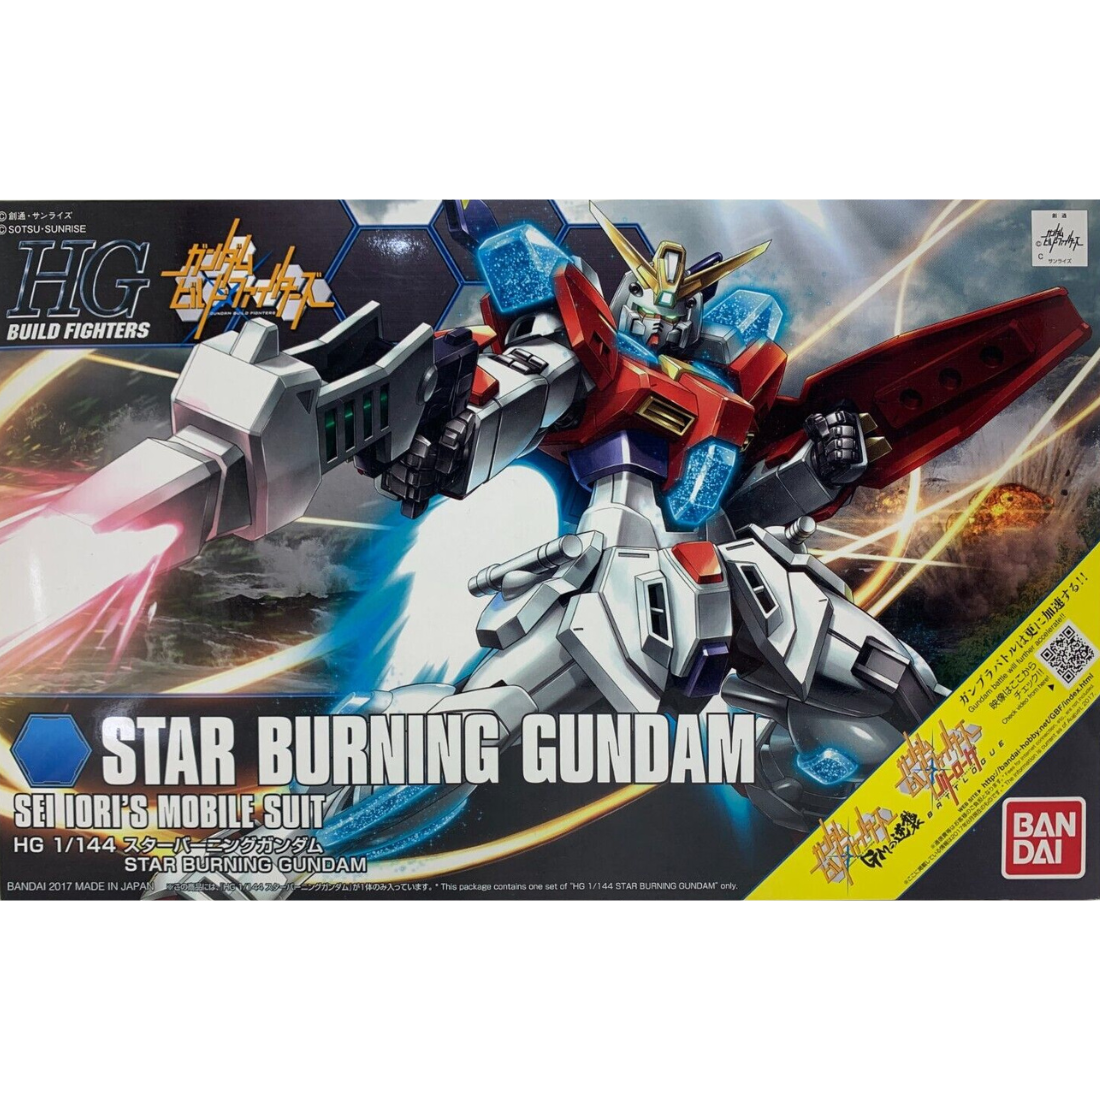 HGBF 1/144 Star Burning Gundam #5058802 by Bandai